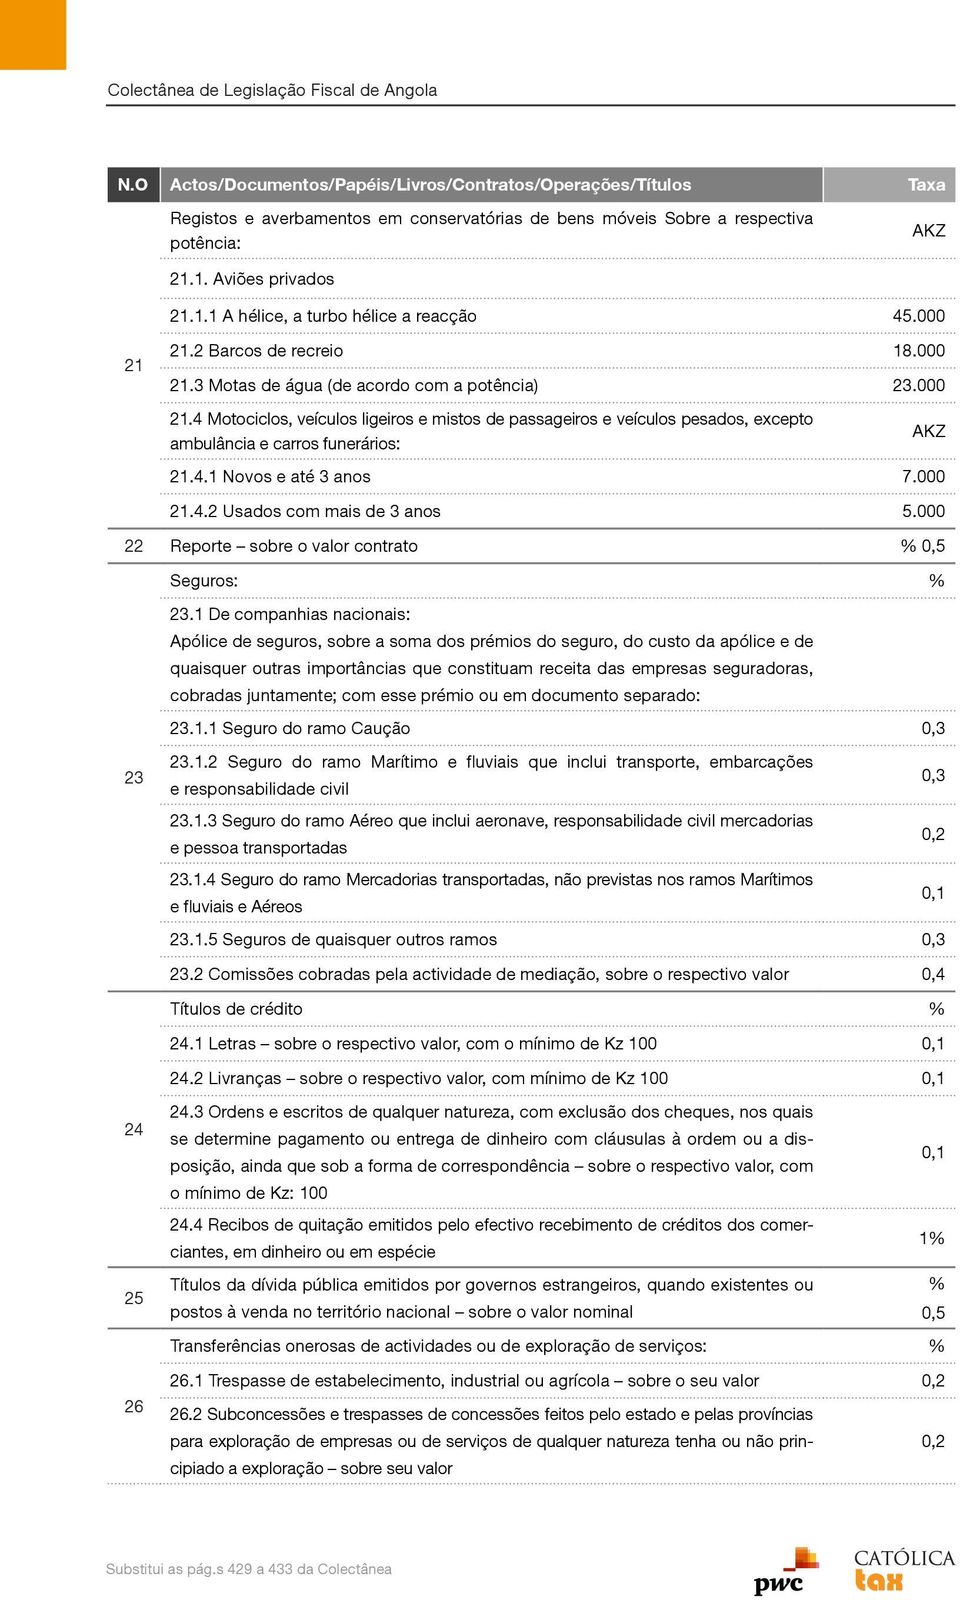 4.1 Novos e até 3 anos 7.000 21.4.2 Usados com mais de 3 anos 5.000 22 Reporte sobre o valor contrato Seguros: 23 23.